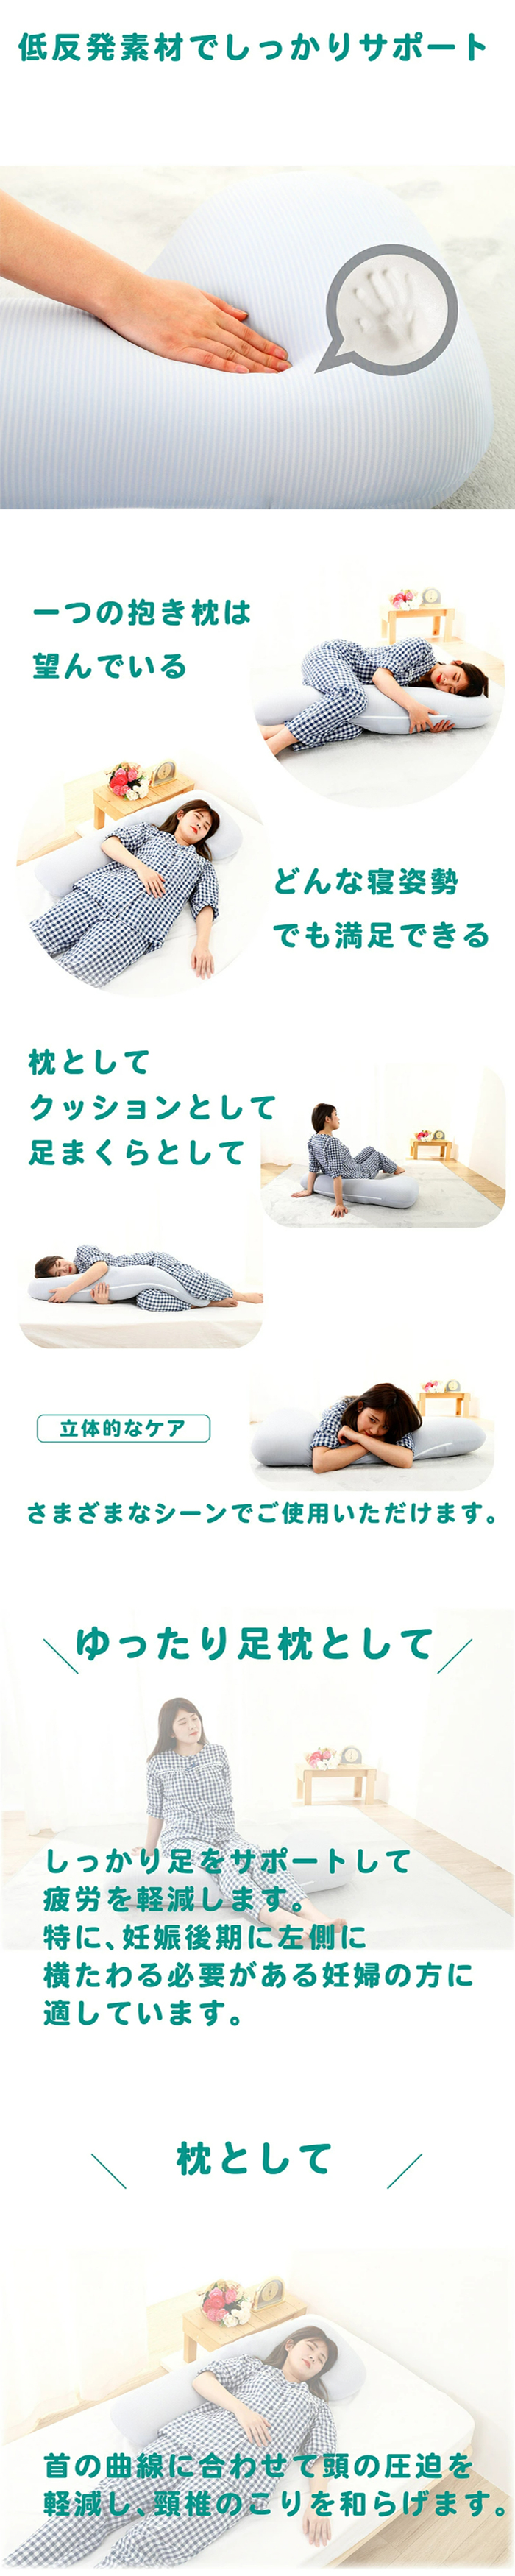 腰枕 腰まくら ネイビー 低反発 腰痛 安眠 洗える 安眠 妊婦 (管理S) 送料無料 